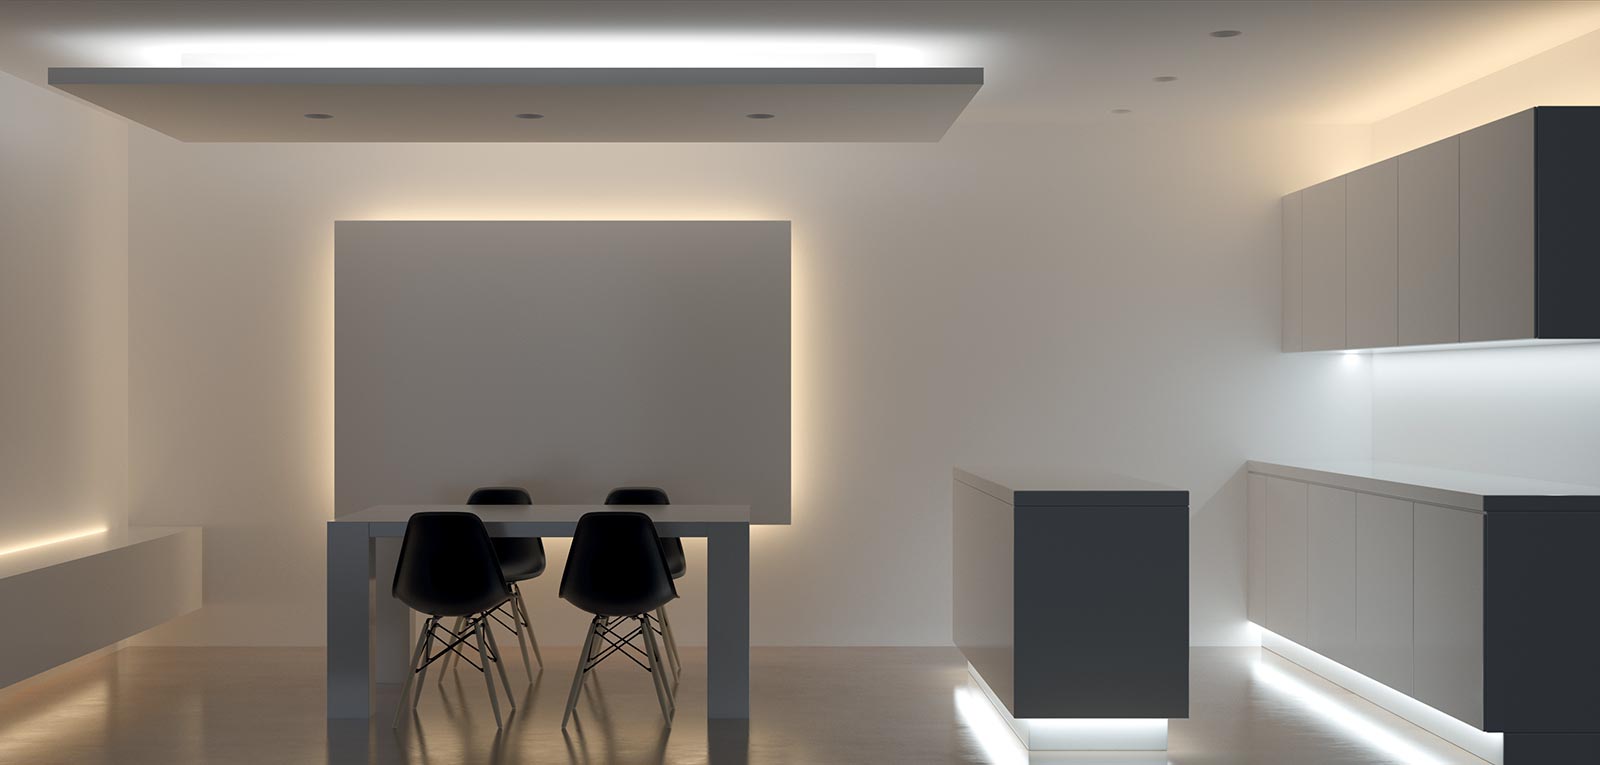 Loox 5 il nuovo sistema di illuminazione LED per mobili ed ambienti.